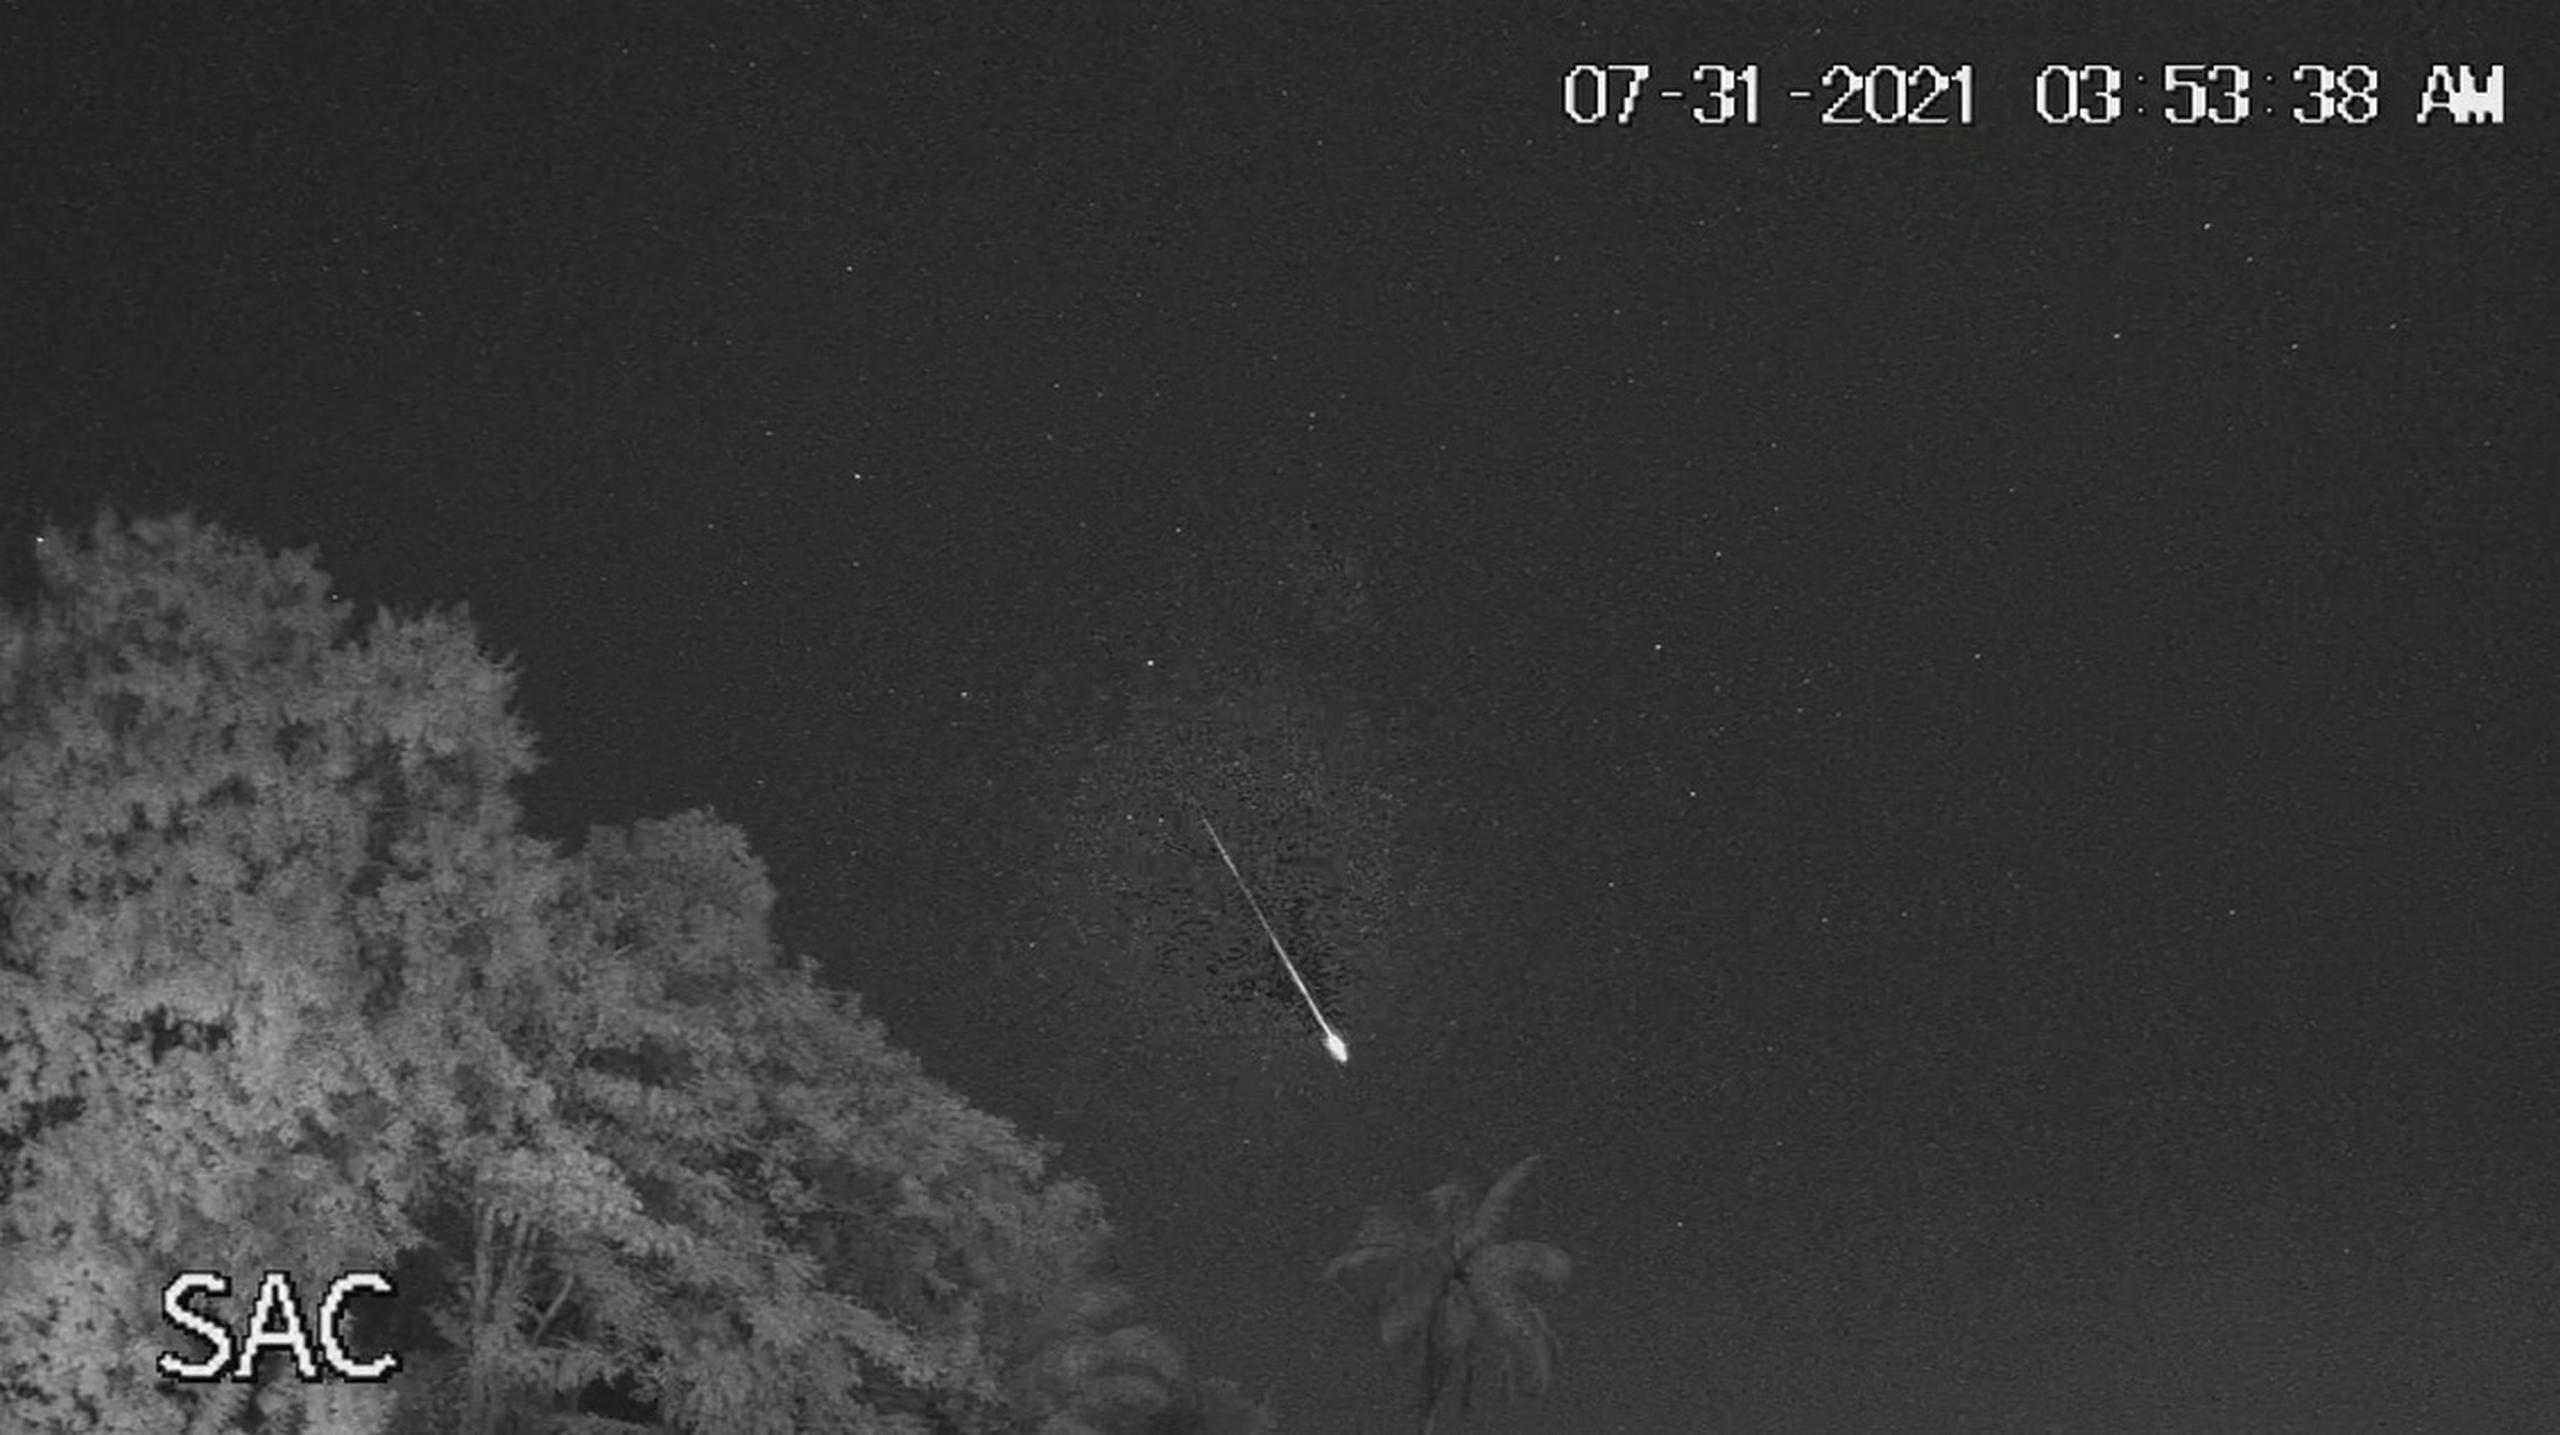 La SAC anticipó que más meteoros serán visibles próximamente, ya que se acerca otra lluvia de meteoros, conocida como las Perseidas, cuyo máximo debe ocurrir cerca del 11, 12 y 13 de Agosto.